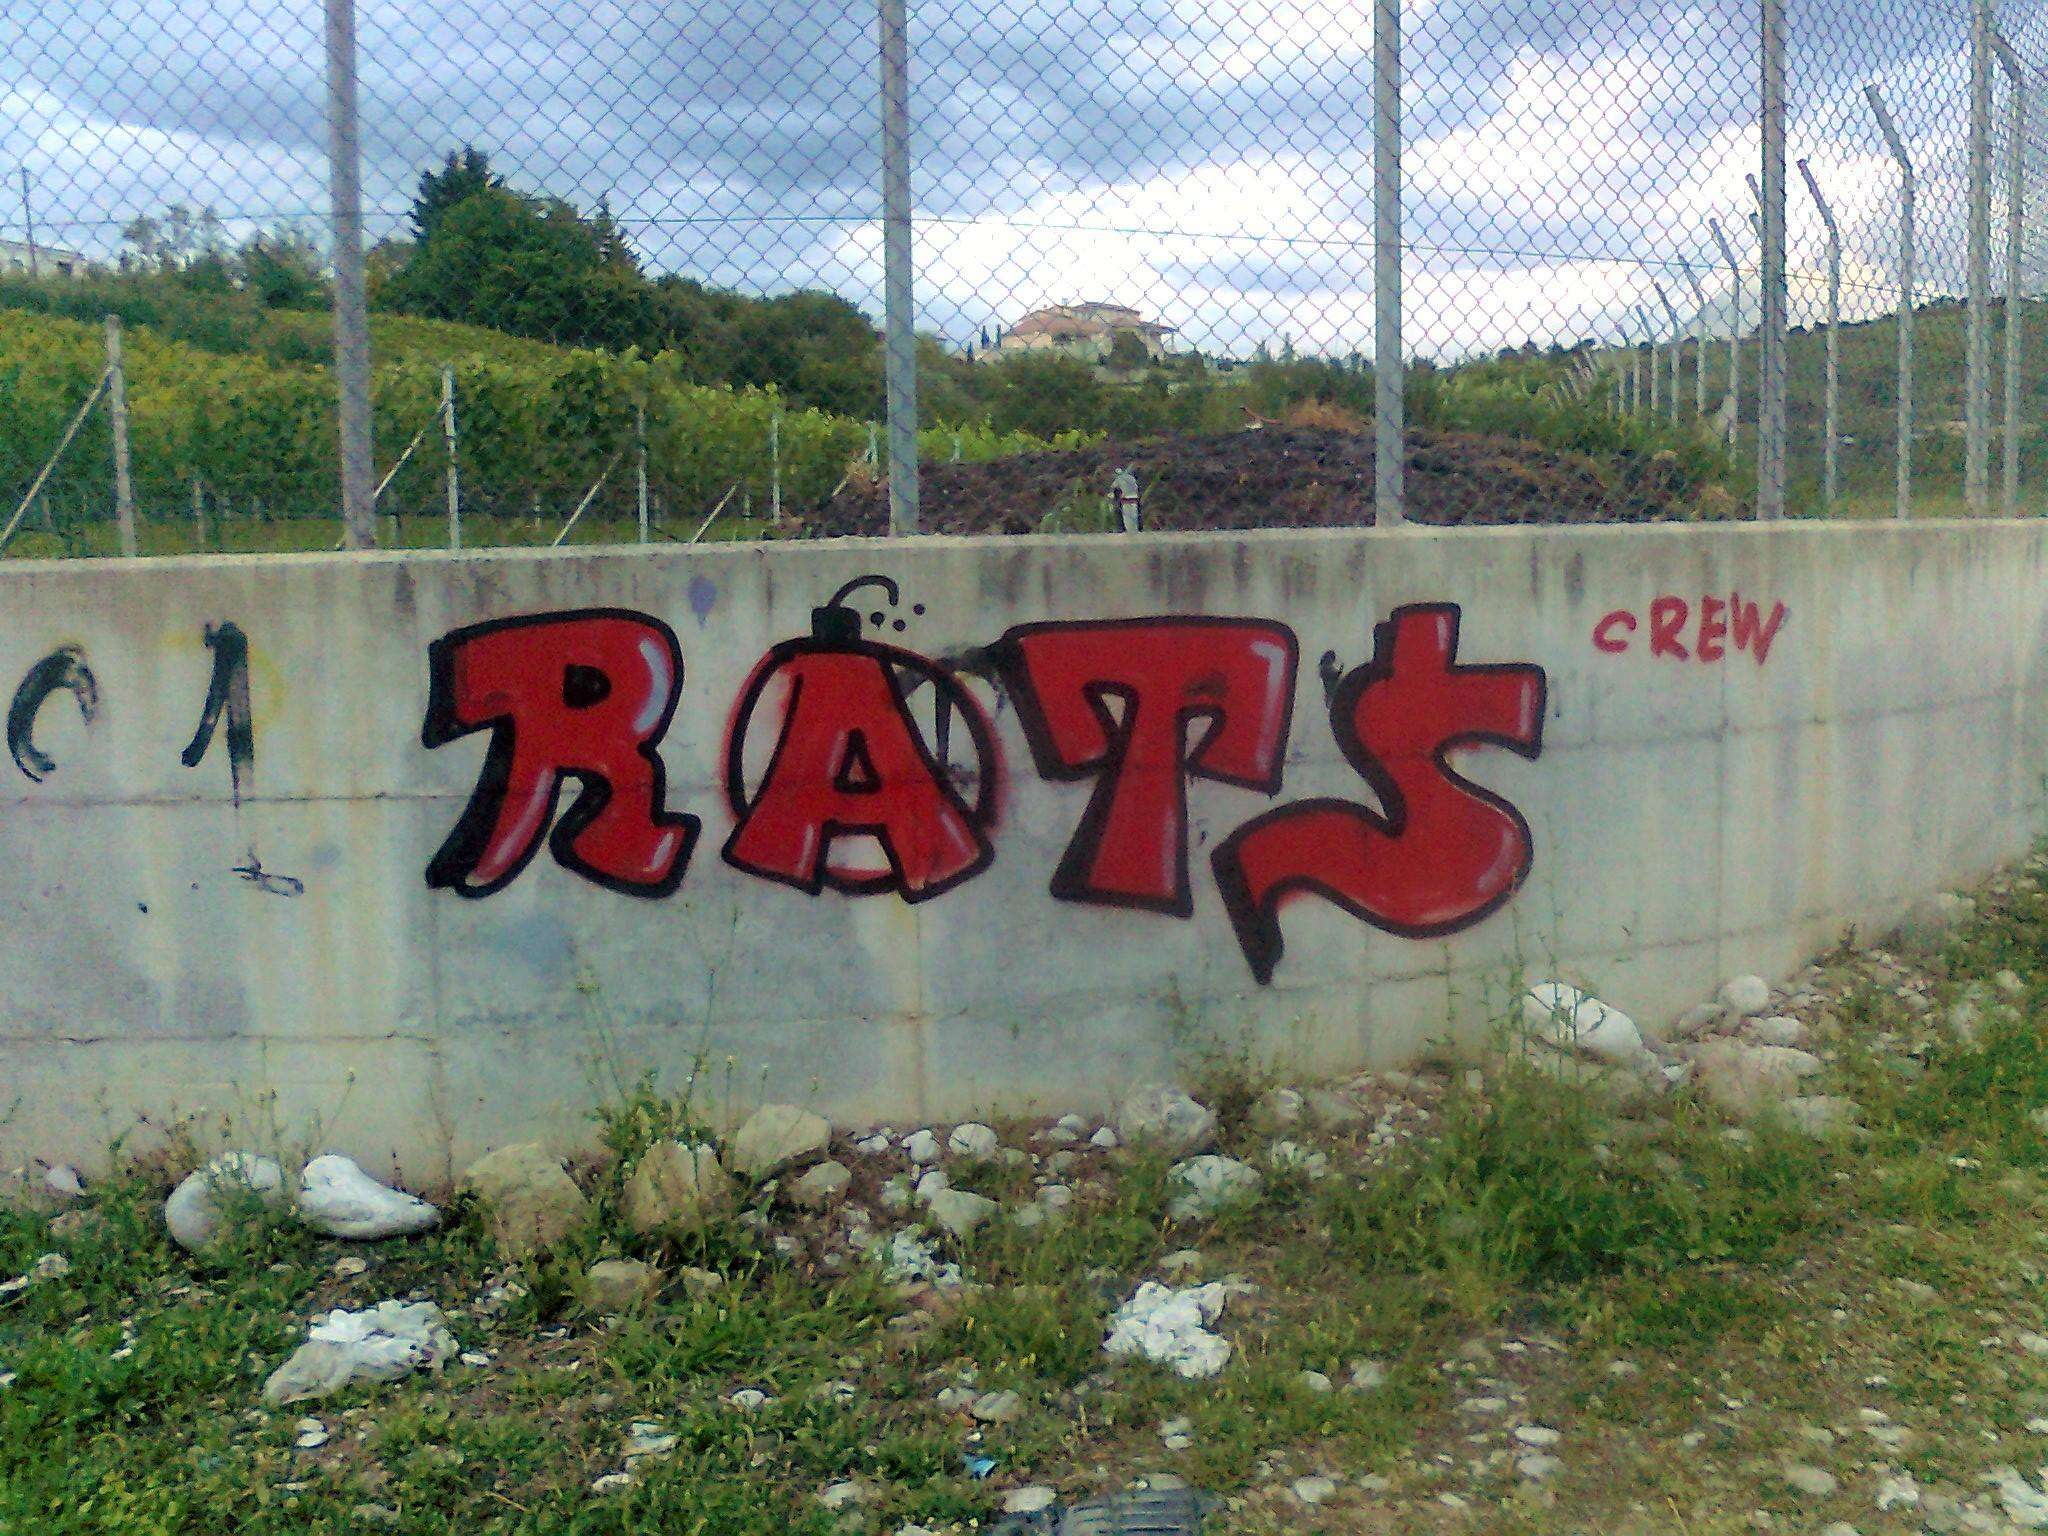 Rats Crew: Αλληλεγγύη στους εξεγερμένους στην Γαλλία [video]